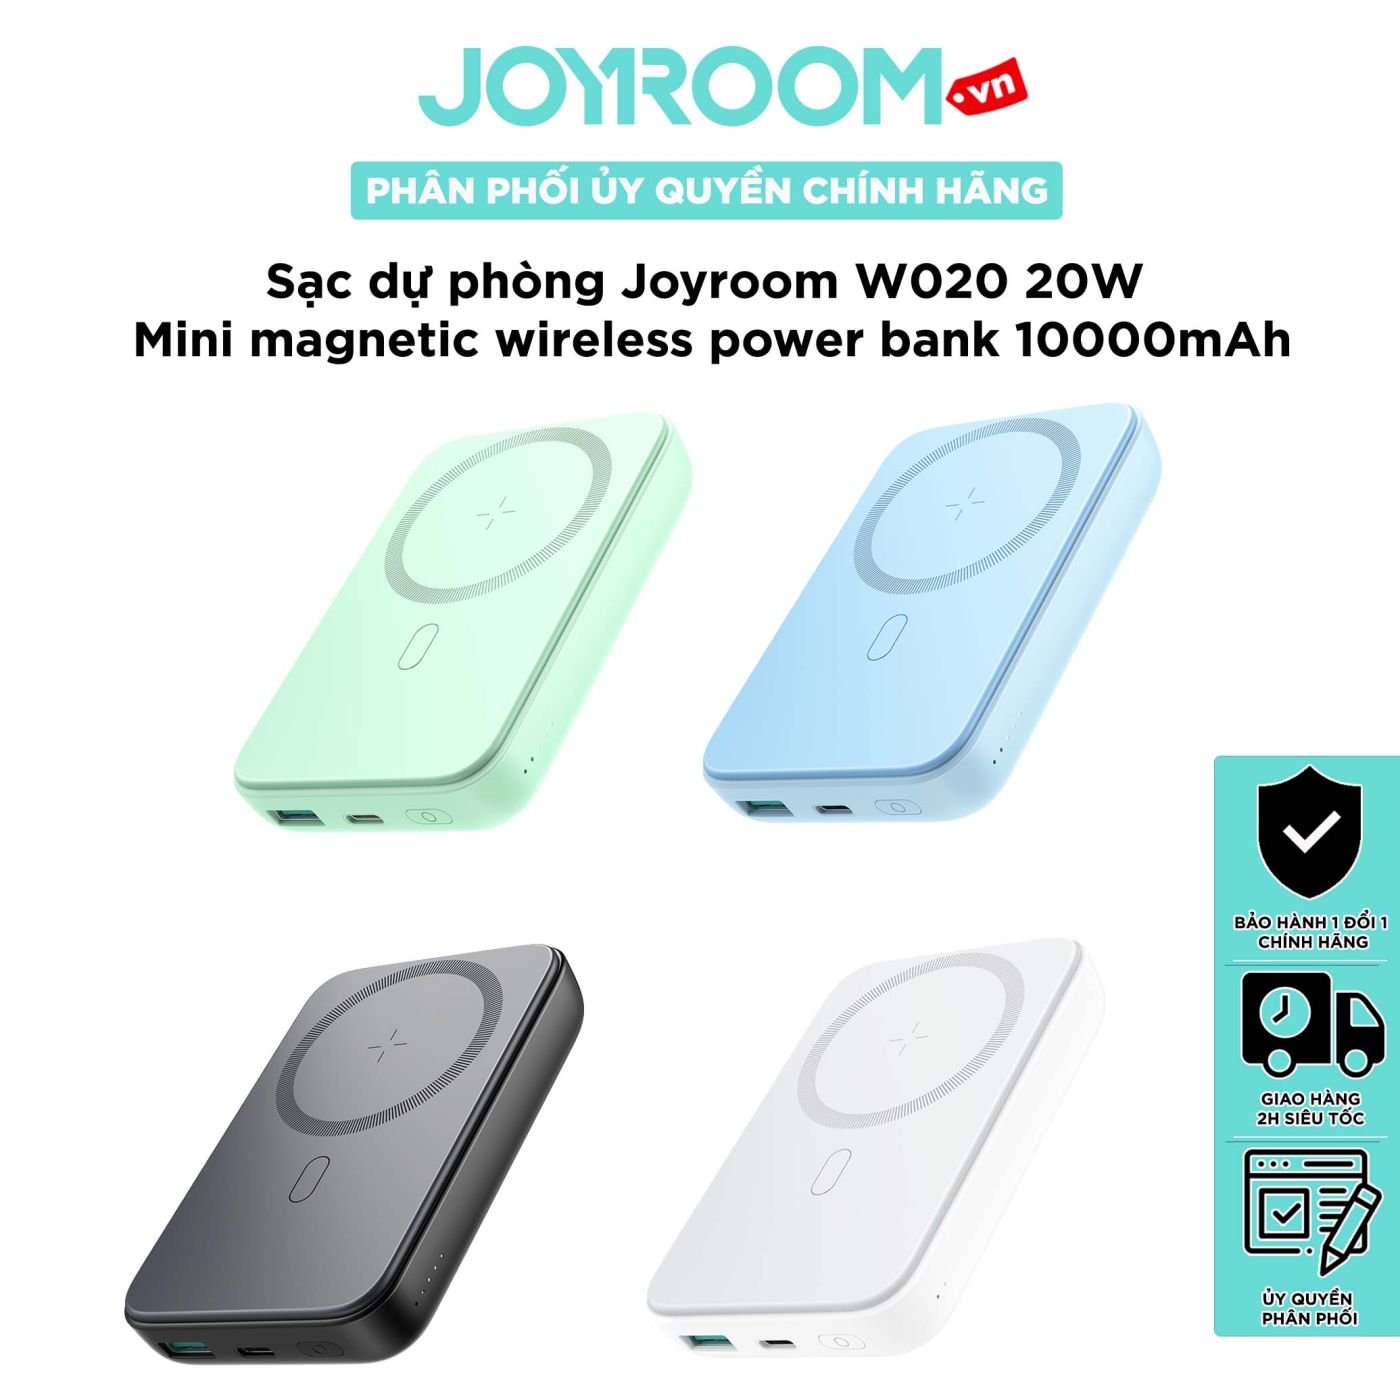 Sạc dự phòng iPhone Joyroom W020 công suất 20W-10000mAh nam châm magsafe với nhiều màu sắc tặng kèm